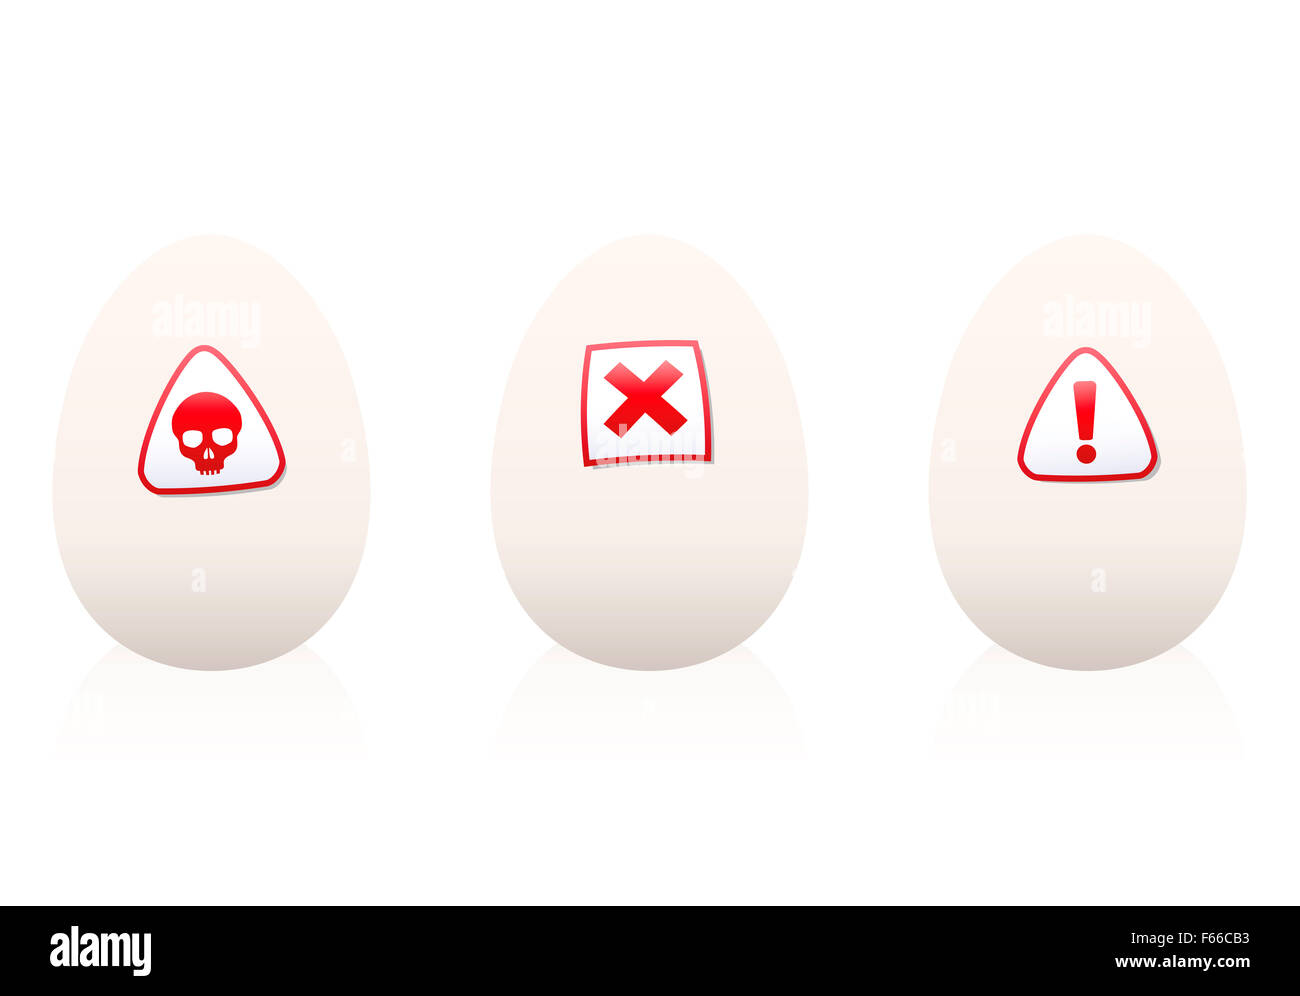 Uova con simboli di pericolo su di esso - avvertimento contro alimenti dannosi per la salute o la nutrizione. Immagine su sfondo bianco. Foto Stock